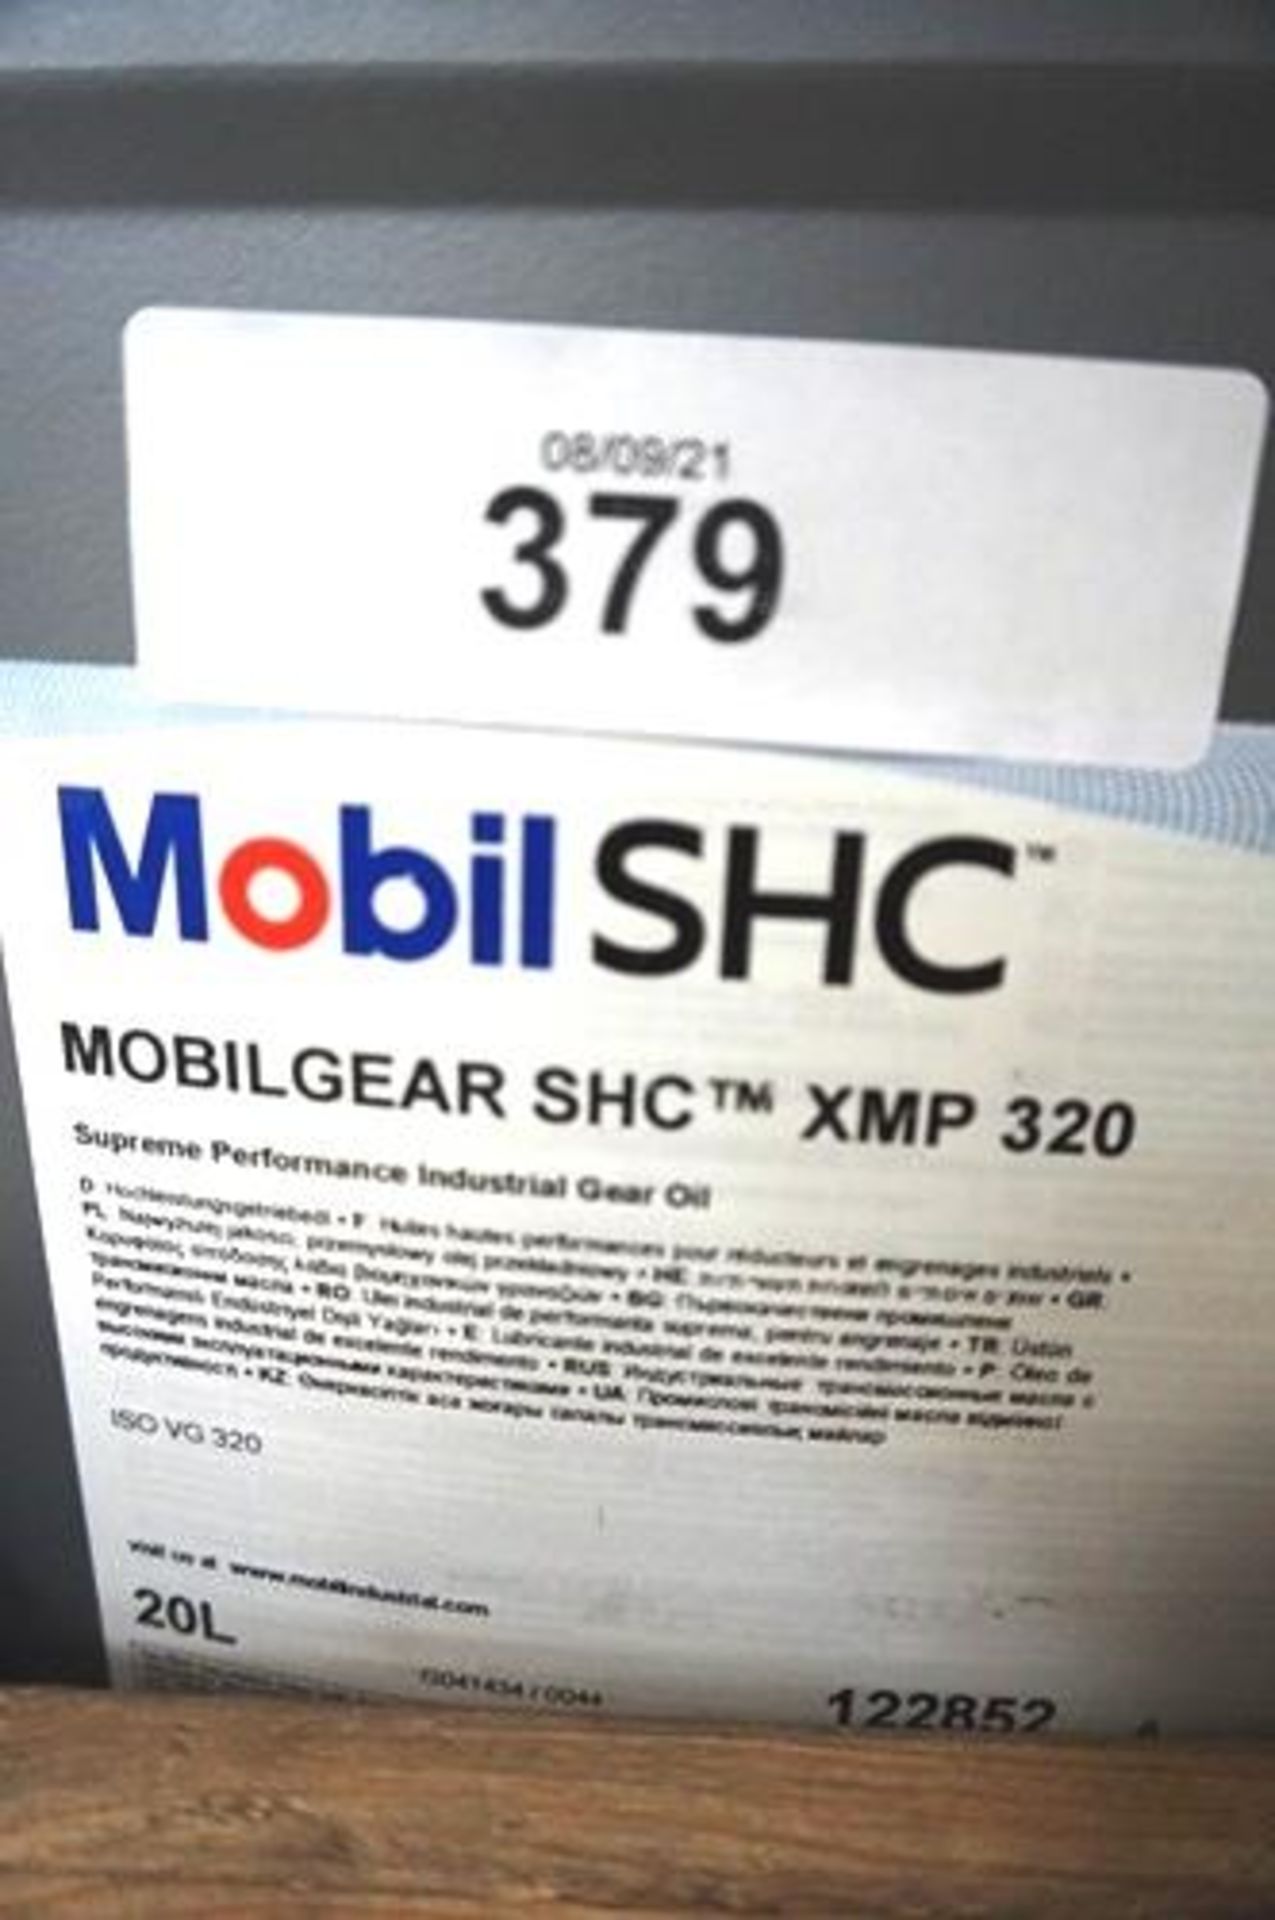 1 x 20ltr bottle of Mobil SHC industrial gear oil, XMP 320 - New (GS13)